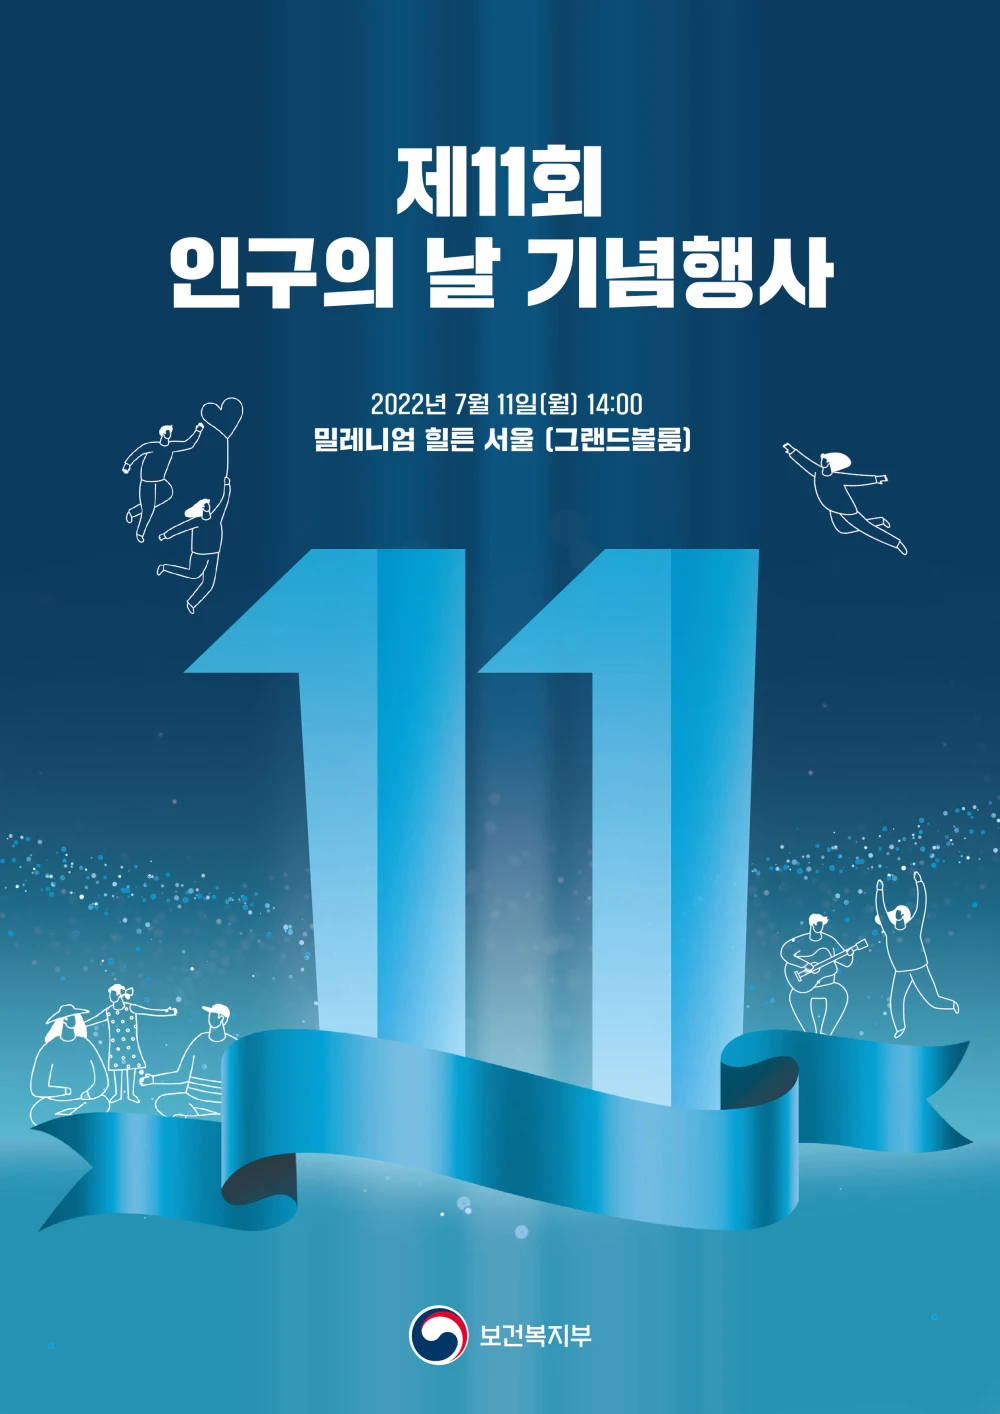 2022년 제11회 인구의 날 기념행사 포스터. 2022년 7월 9일 월요일 14시 밀레니엄 힐튼 서울 그랜드볼룸 주최 보건복지부